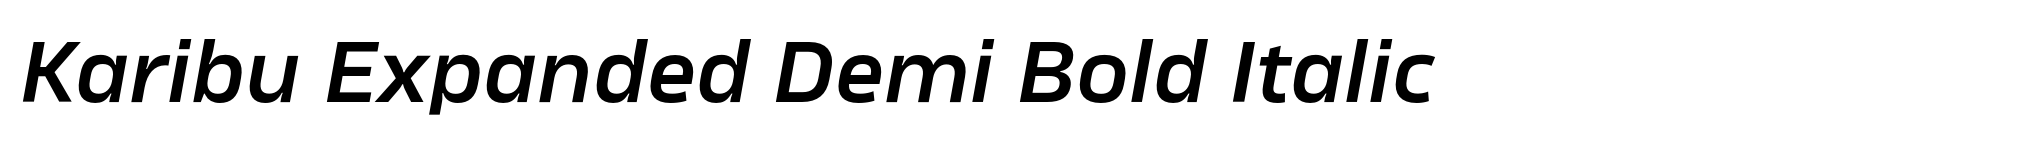 Karibu Expanded Demi Bold Italic image